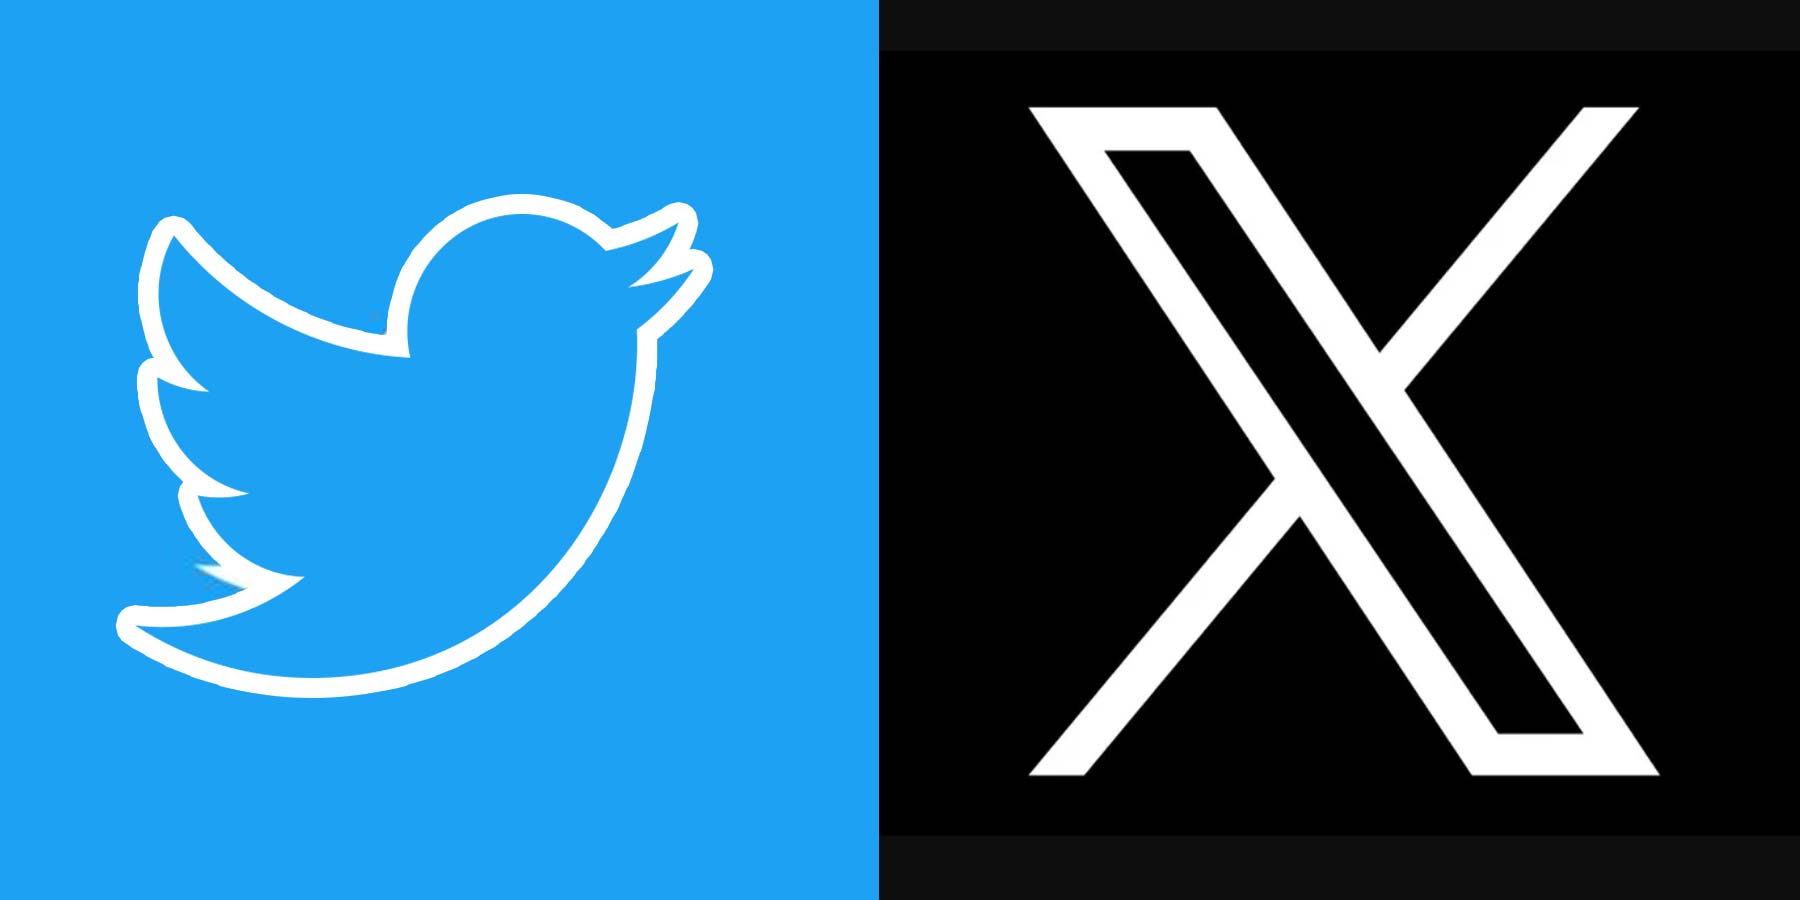 Elon Musk Replaces Twitter's Logo Blue Bird With an 'X'